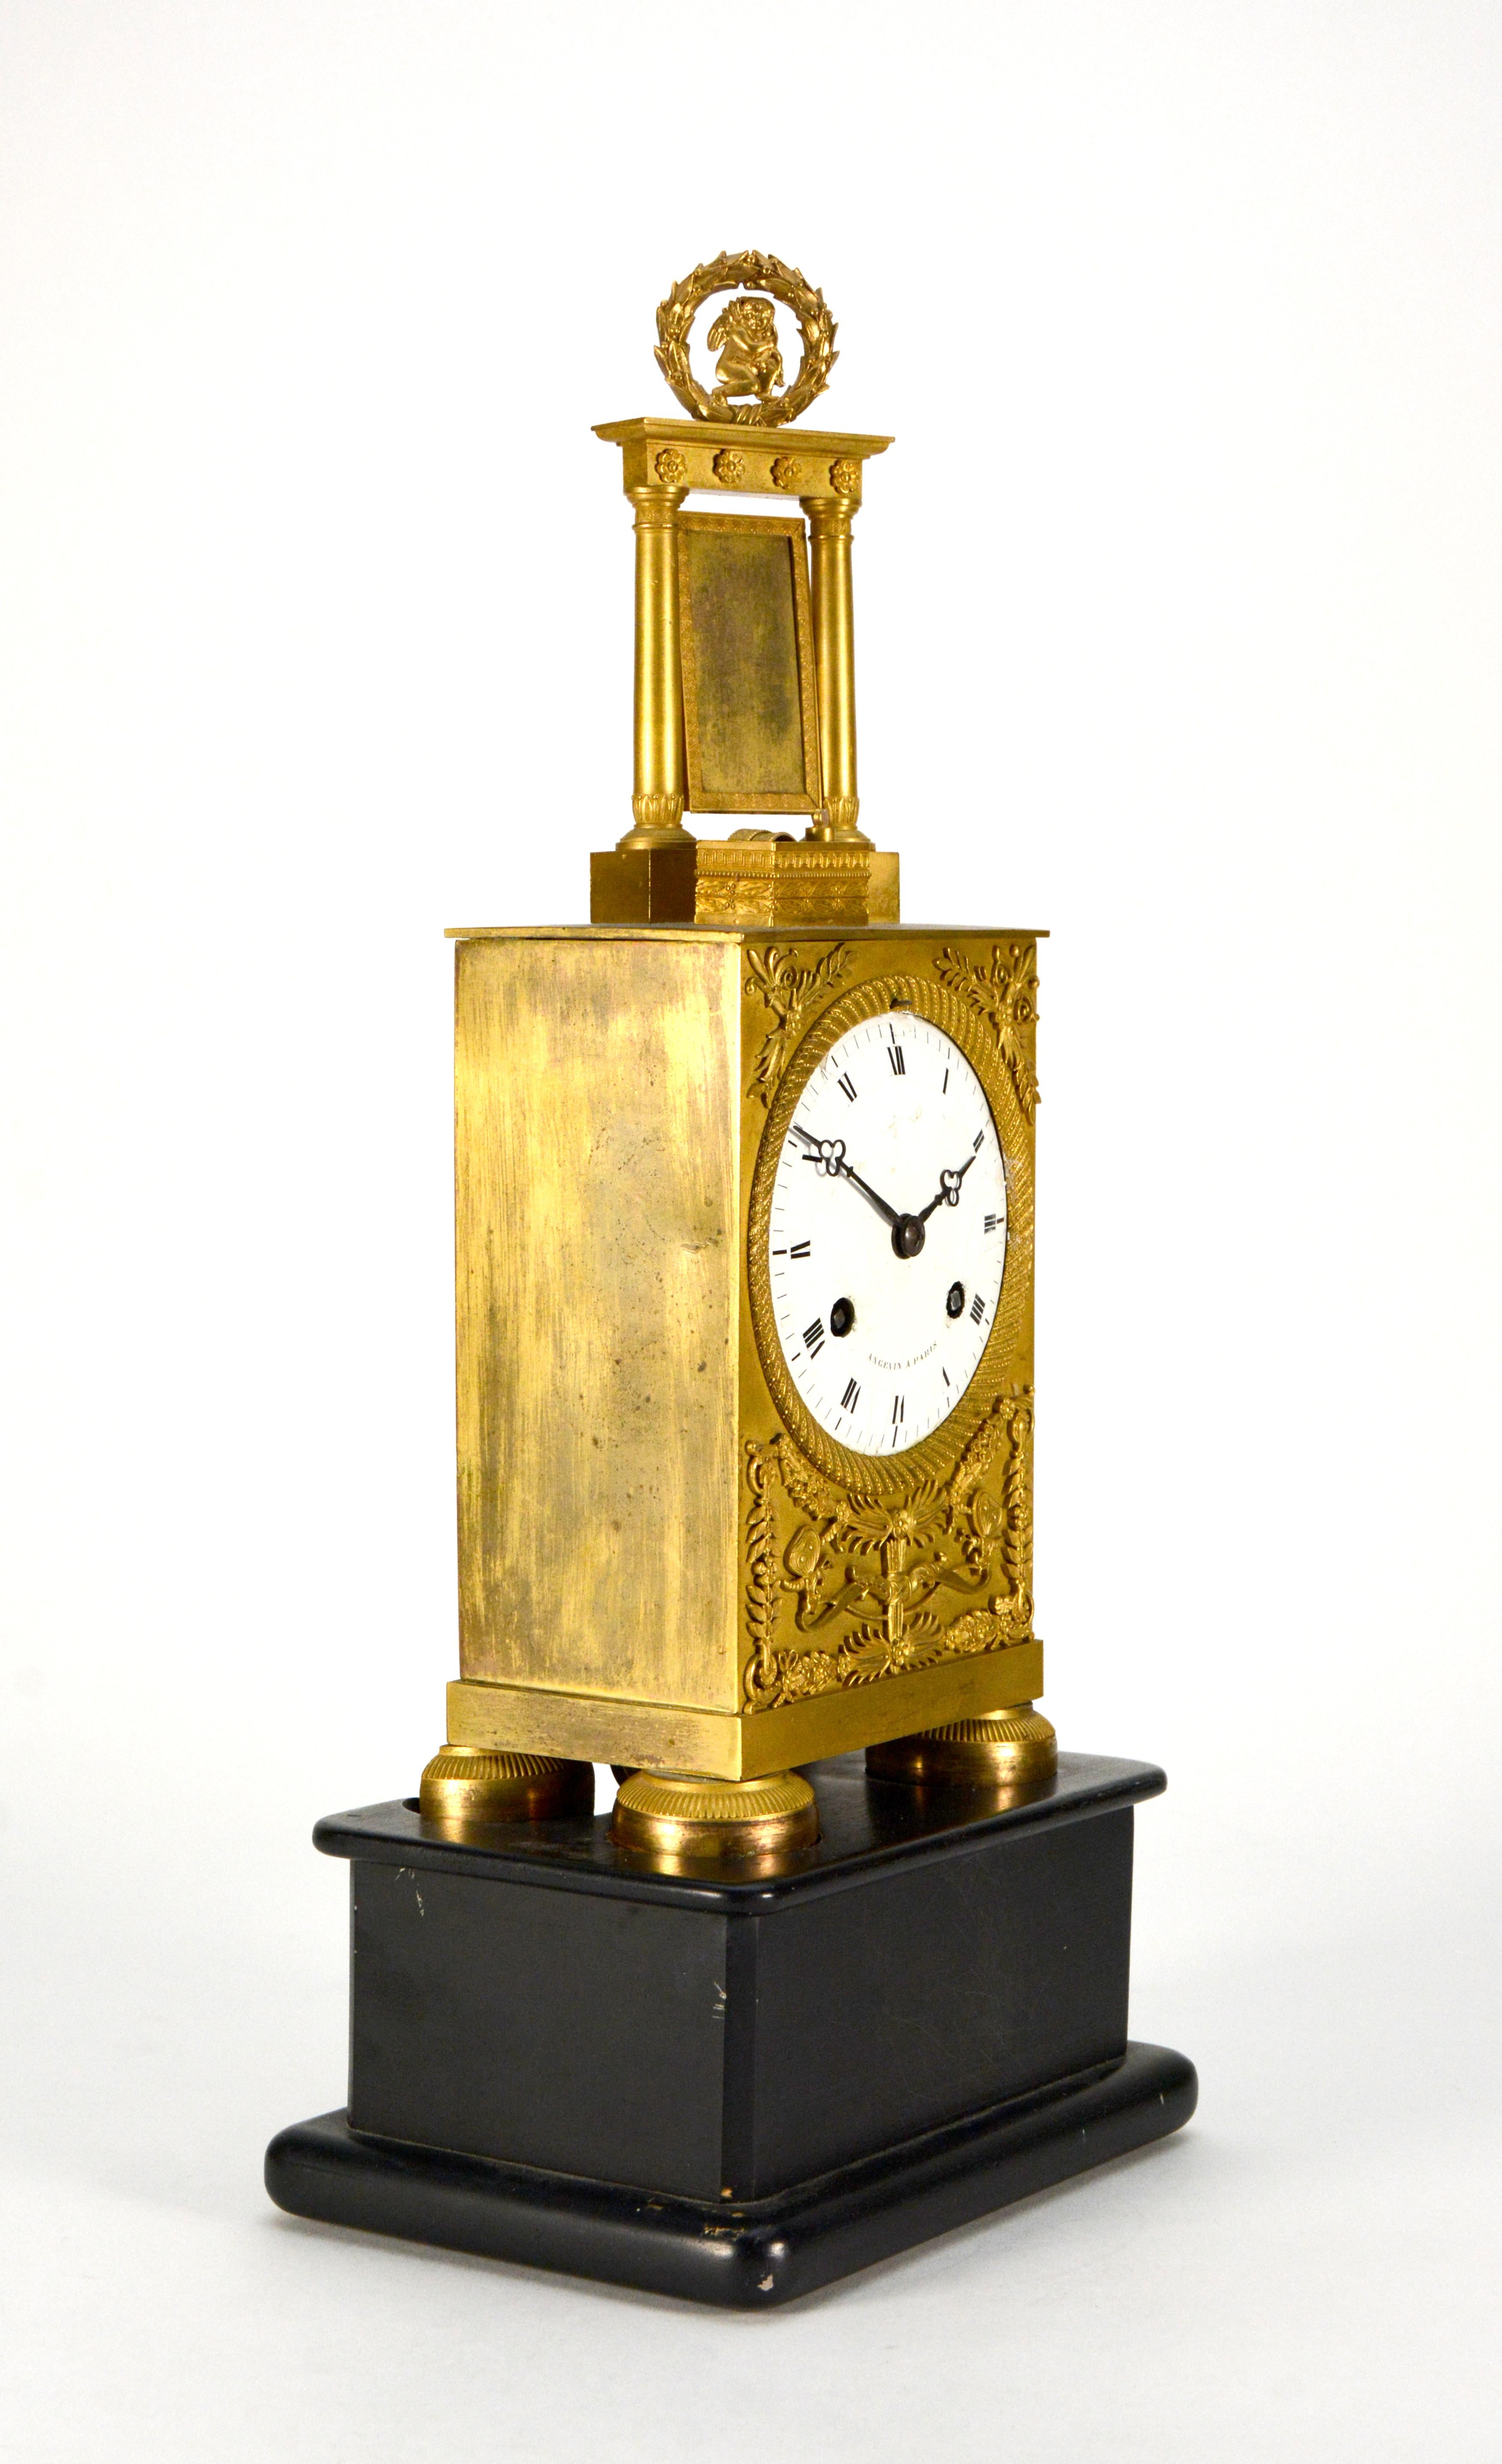 Pendule de cheminée ancienne en bronze doré Empire par Angevin A Paris

MOUVEMENT : Mécanisme de remontage de 8 jours

FONCTION : heure avec sonnerie de la demi-heure et de l'heure

TAILLE : 16 